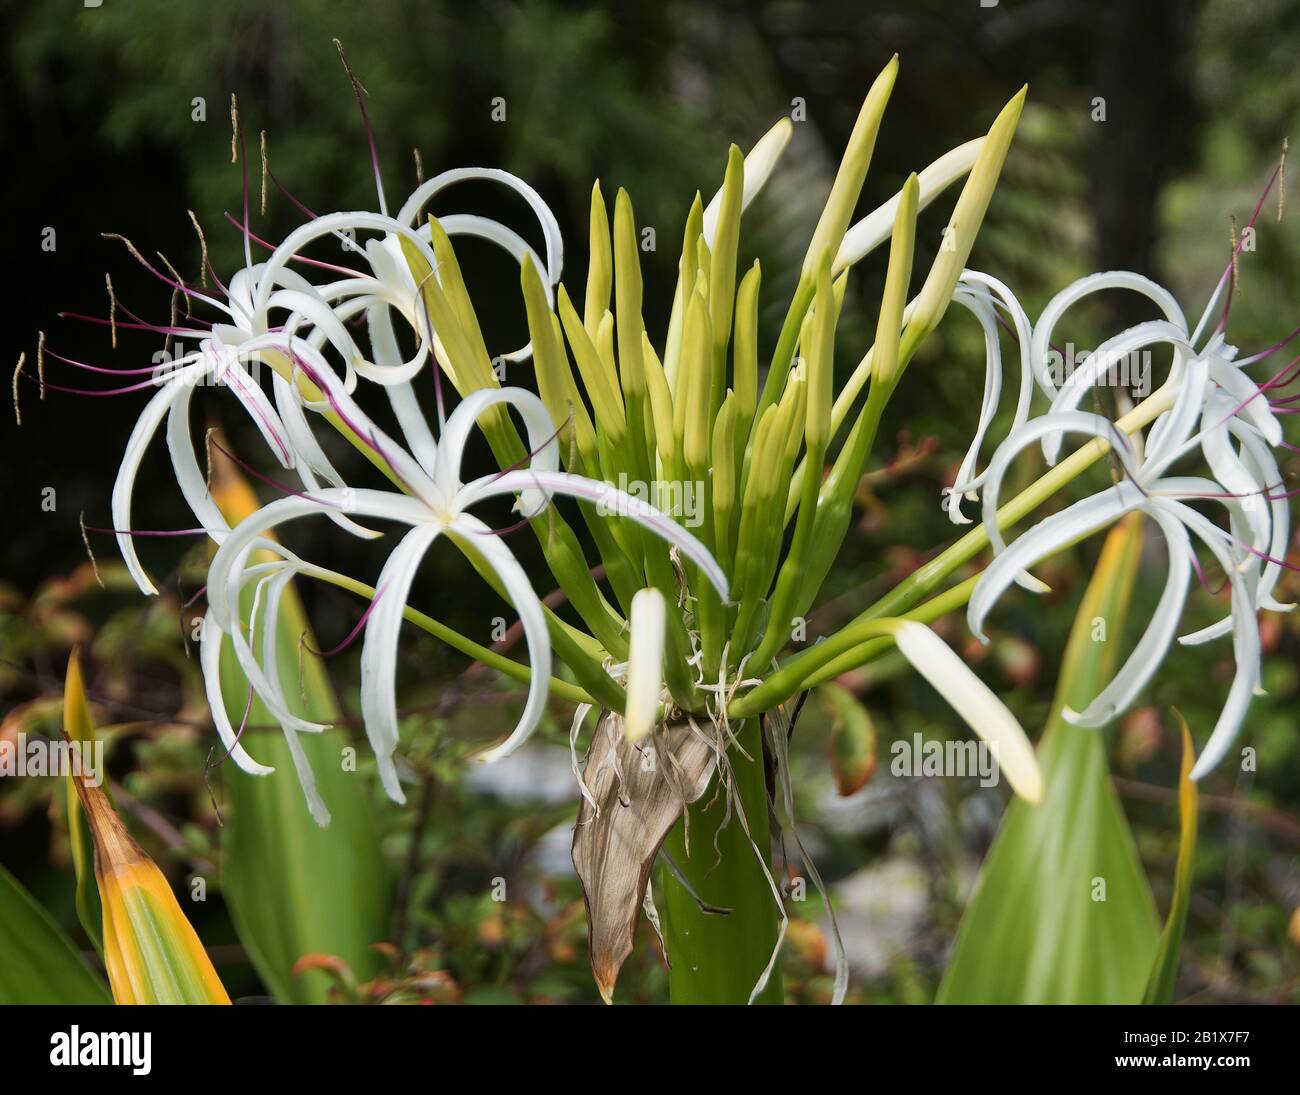 Crinum asiaticum or spider-lily Stock Photo